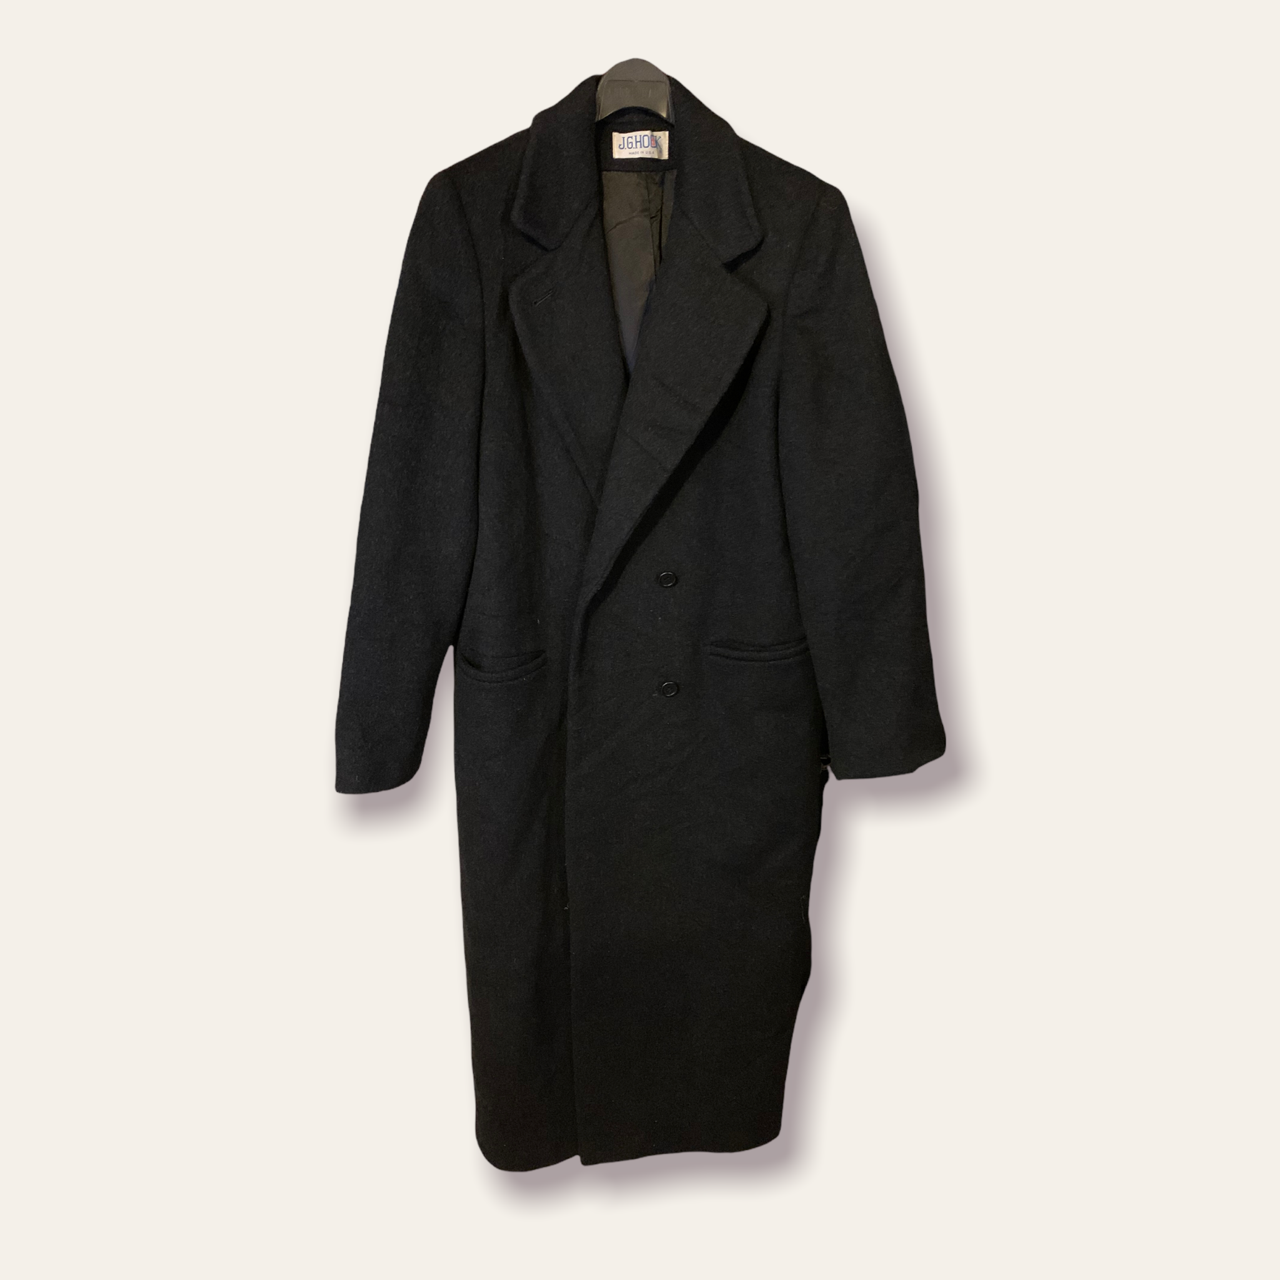 Abrigo de lana hombre color negro largo - Glow Fashion